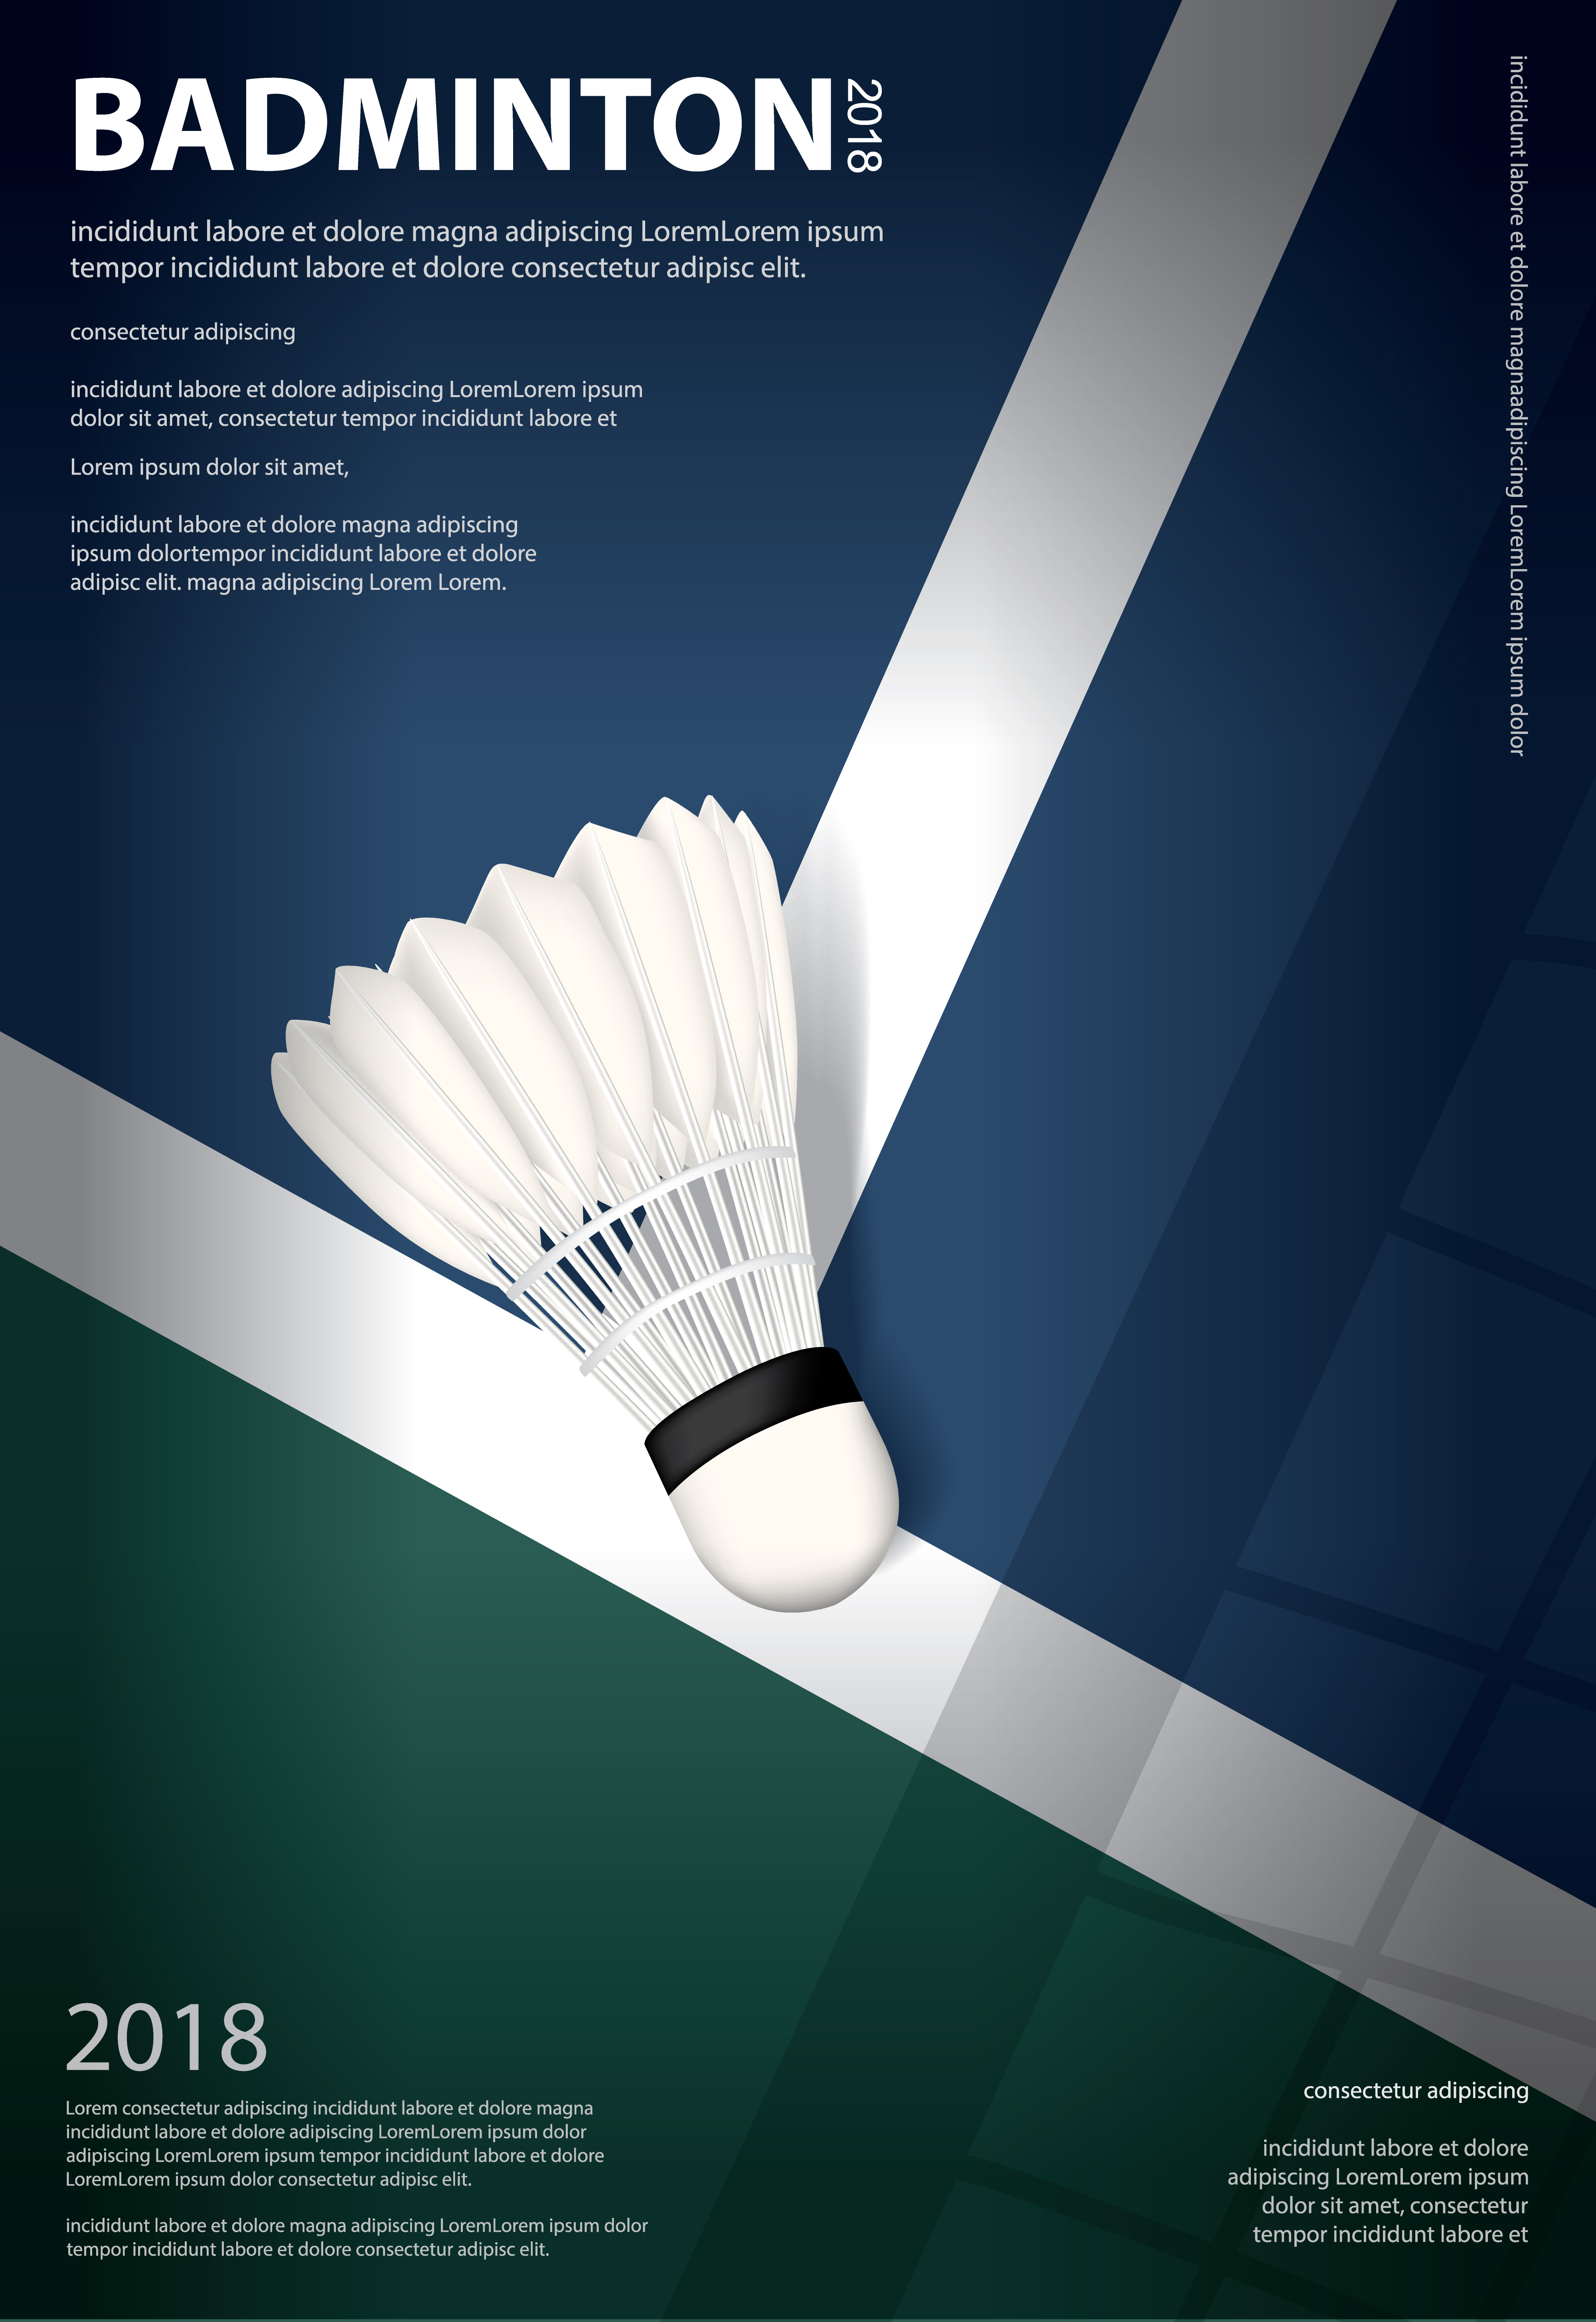 Badminton Championship Poster Vector illustration 568905 Vector Art at